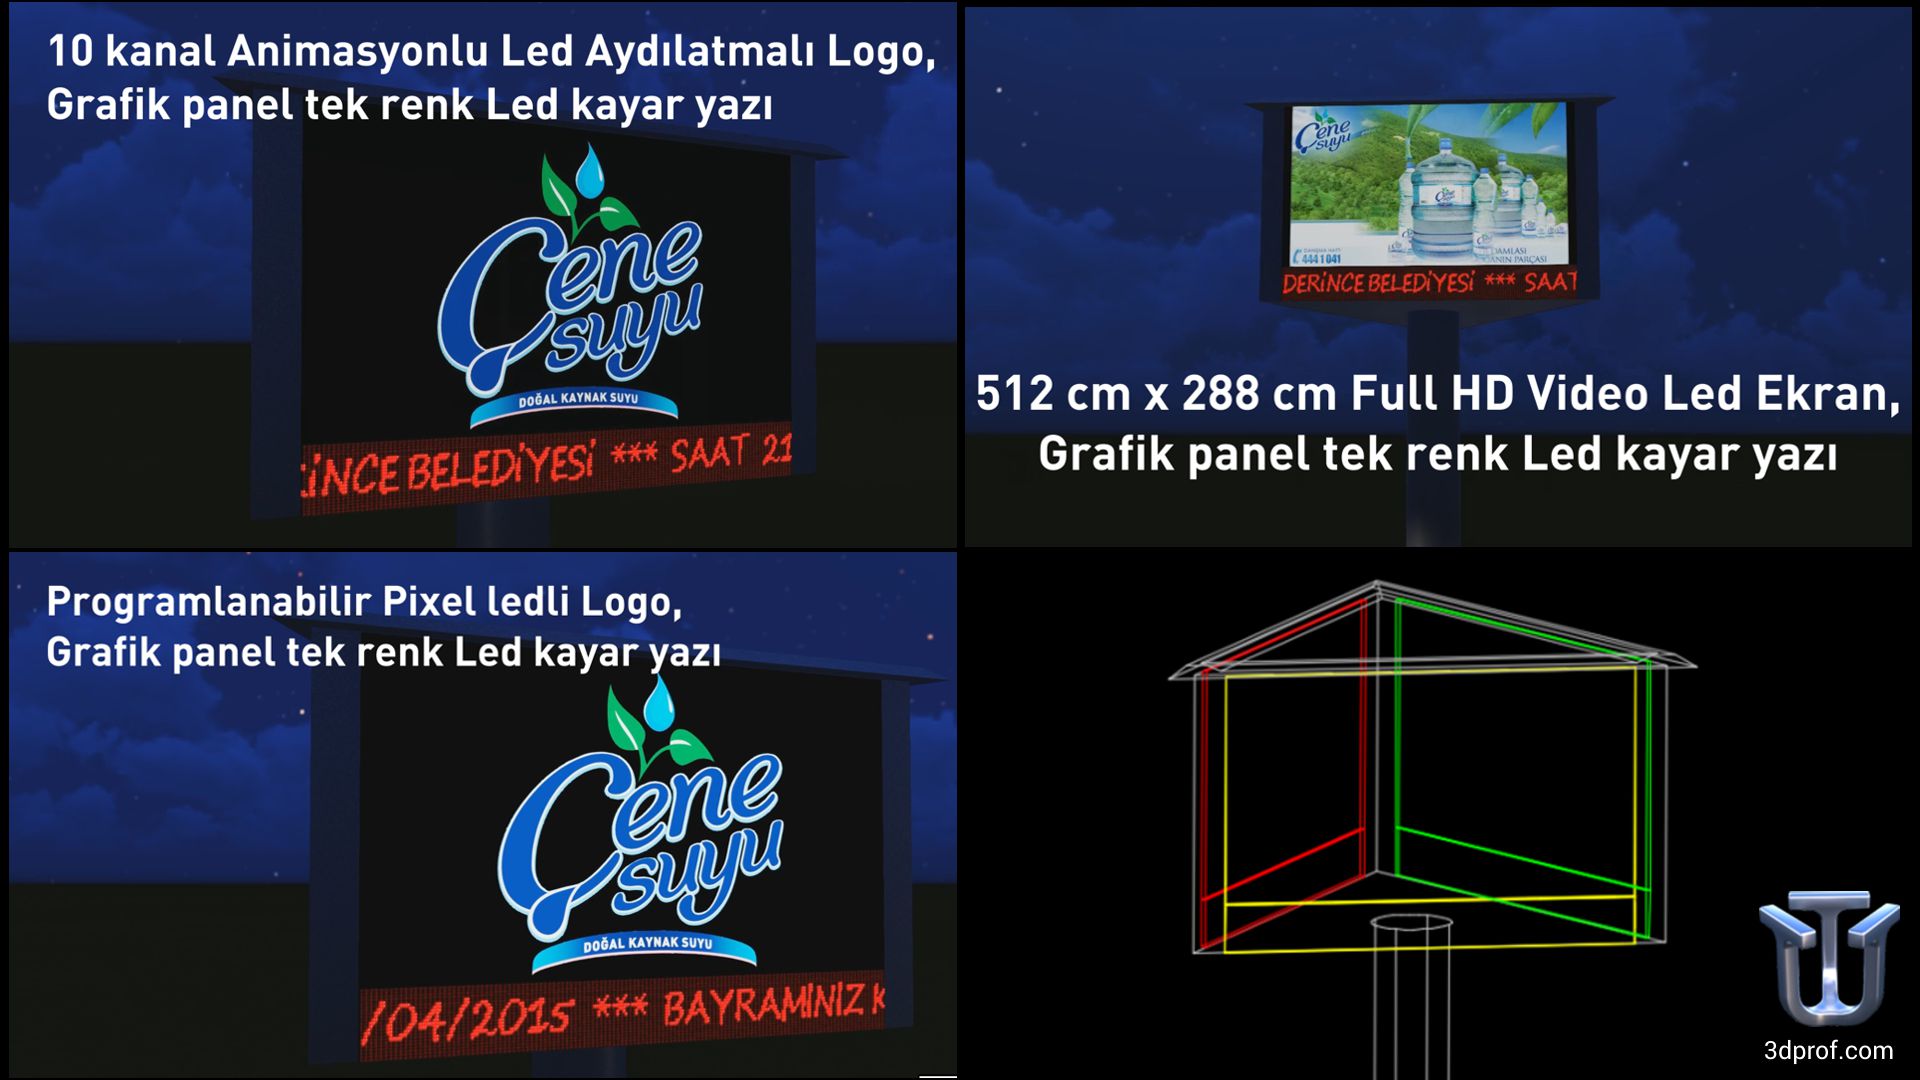 10 kanal animasyonlu led aydınlatmalı logo, grafik panel tek renk led kayan yazı, full hd video led ekran, programlanabilir pixel ledli logo